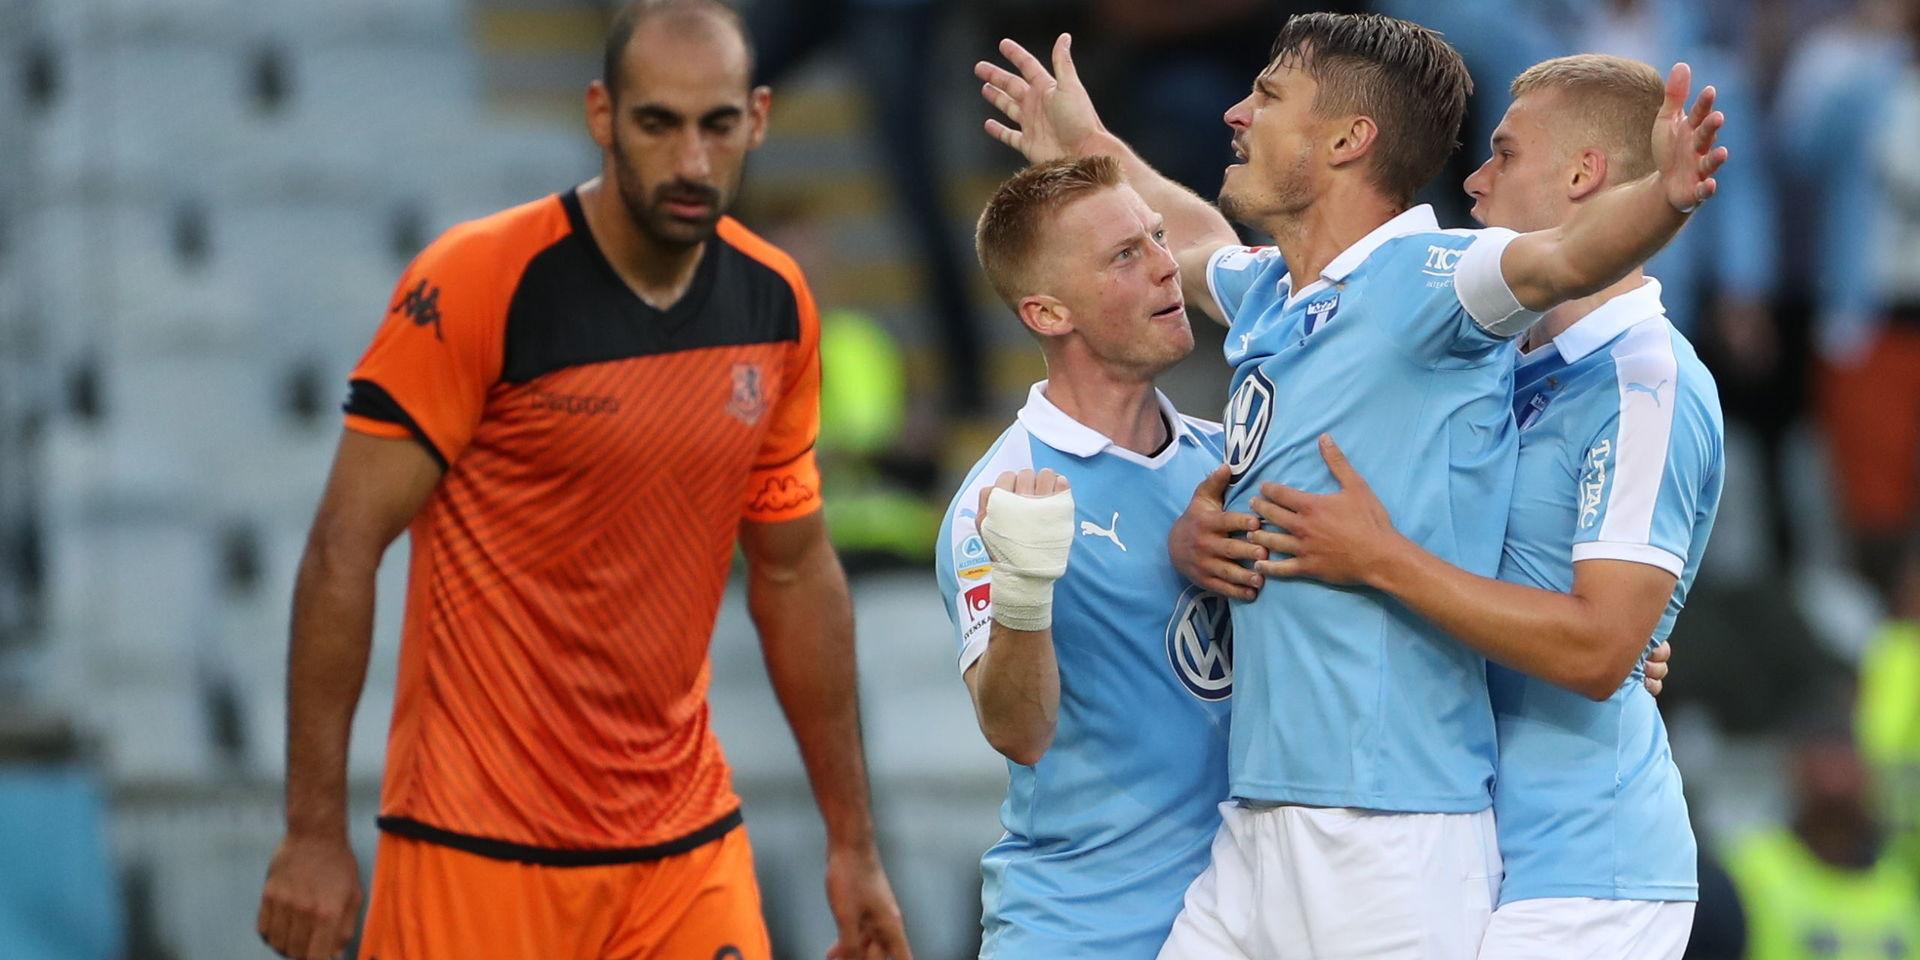 Malmö FF-lagkaptenen Markus Rosenberg satte 1–0 hemma mot israeliska Bnei Yehuda Tel Aviv i det första mötet av det sista kvalsteget till Europa League. MFF vann till slut med klara 3–0. Returen spelas nästa vecka.